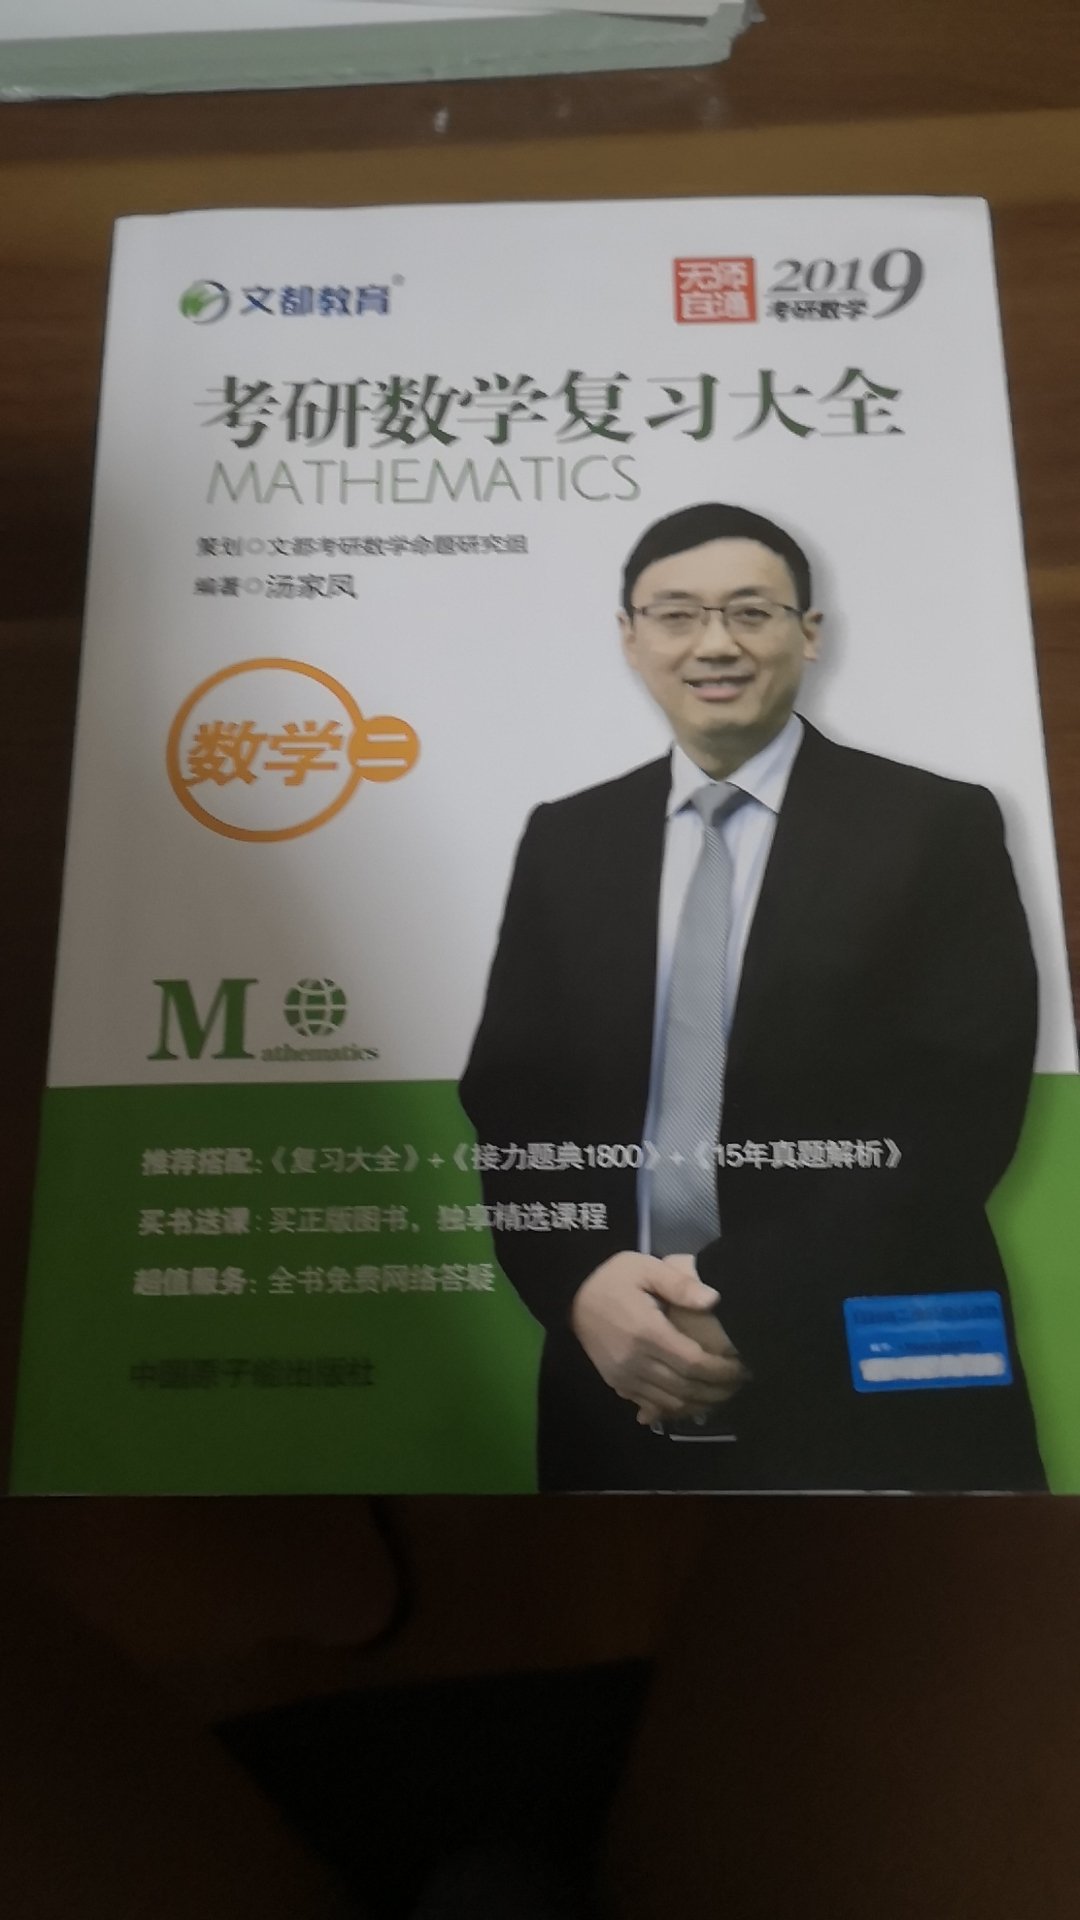 这本书非常好用，王江涛老师是个好老师。真心希望这次能成功上岸。